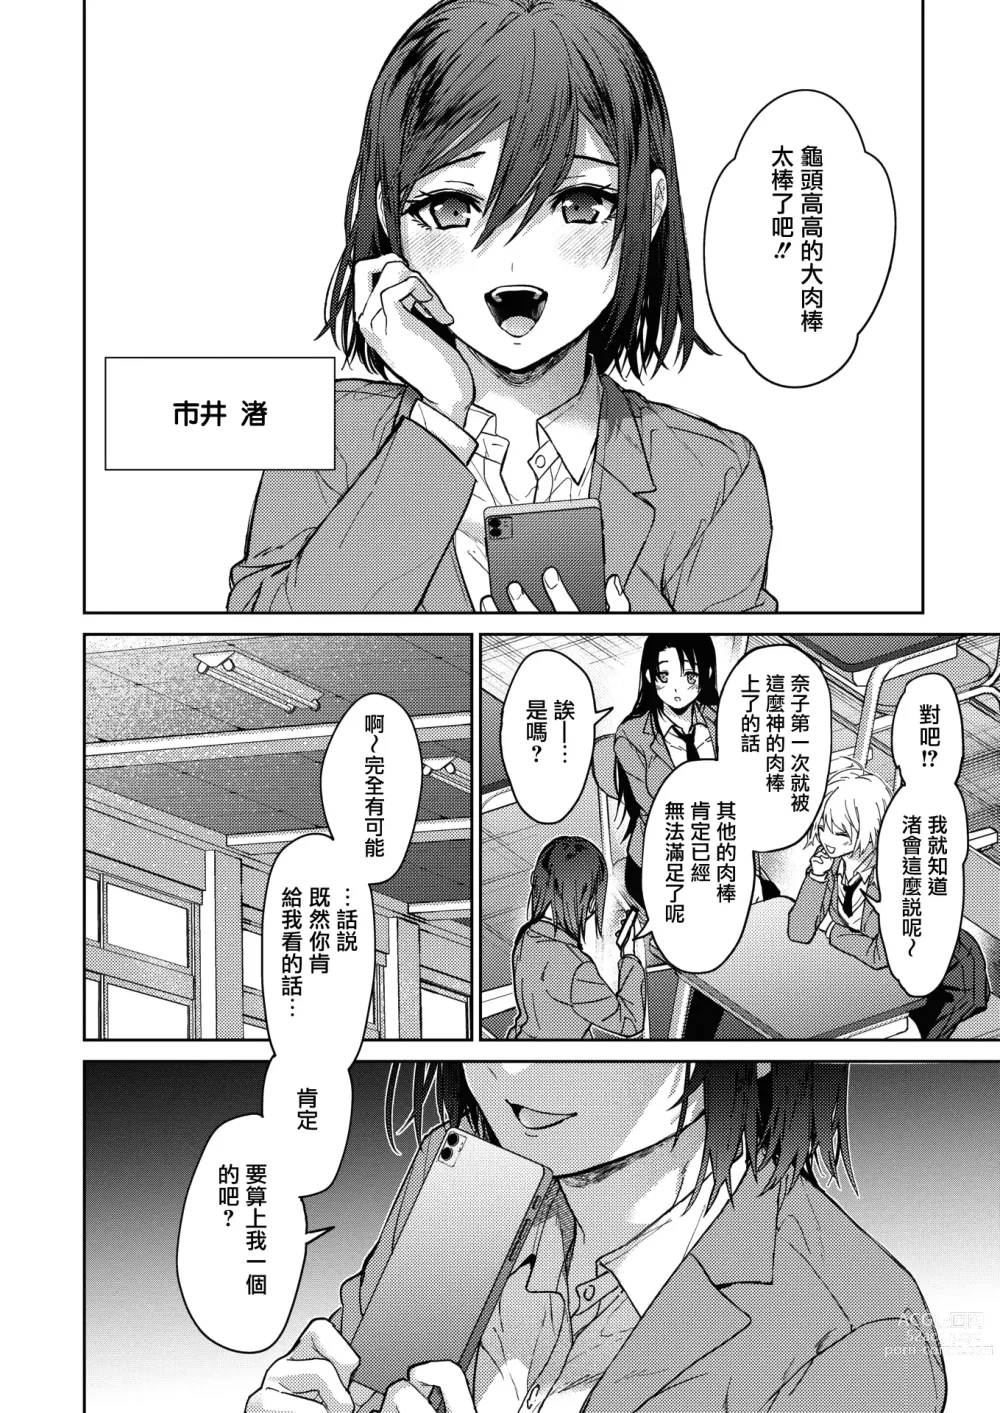 Page 38 of manga Onee-chan-tachi to Issho ni Zenpen